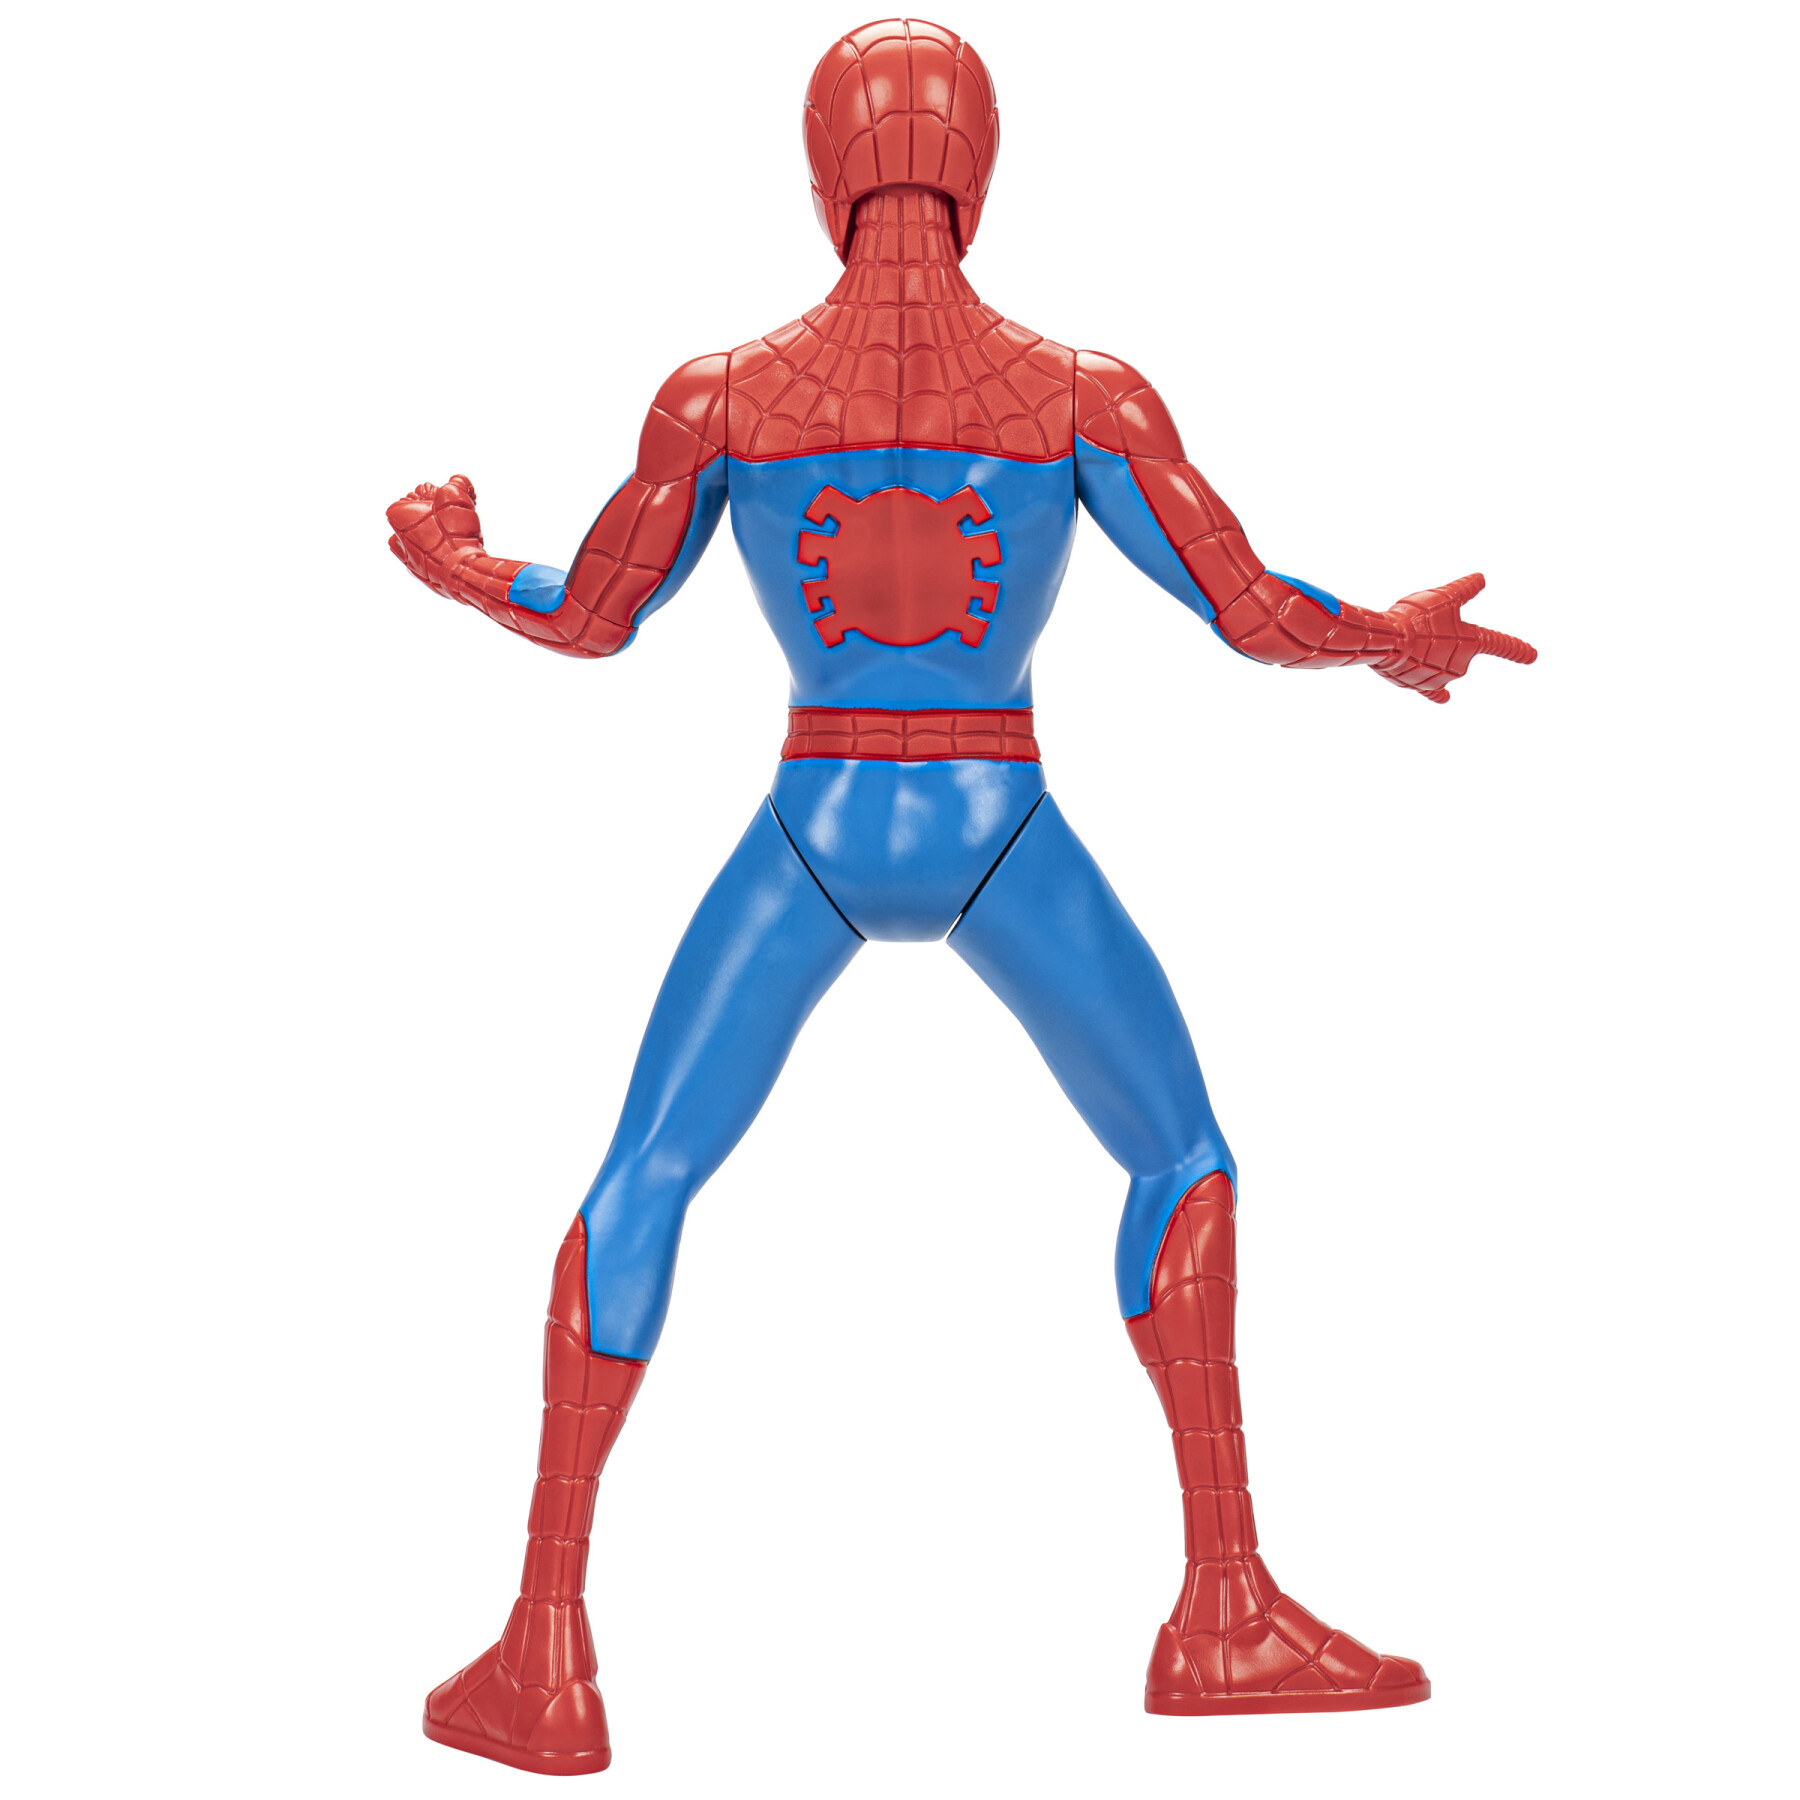 Hasbro marvel, spider-man thwip, action figure in scala da 33 cm, giocattoli di supereroi per bambini e bambine, dai 5 anni in su, accessori blaster lanciaragnatela inclusi - Spiderman